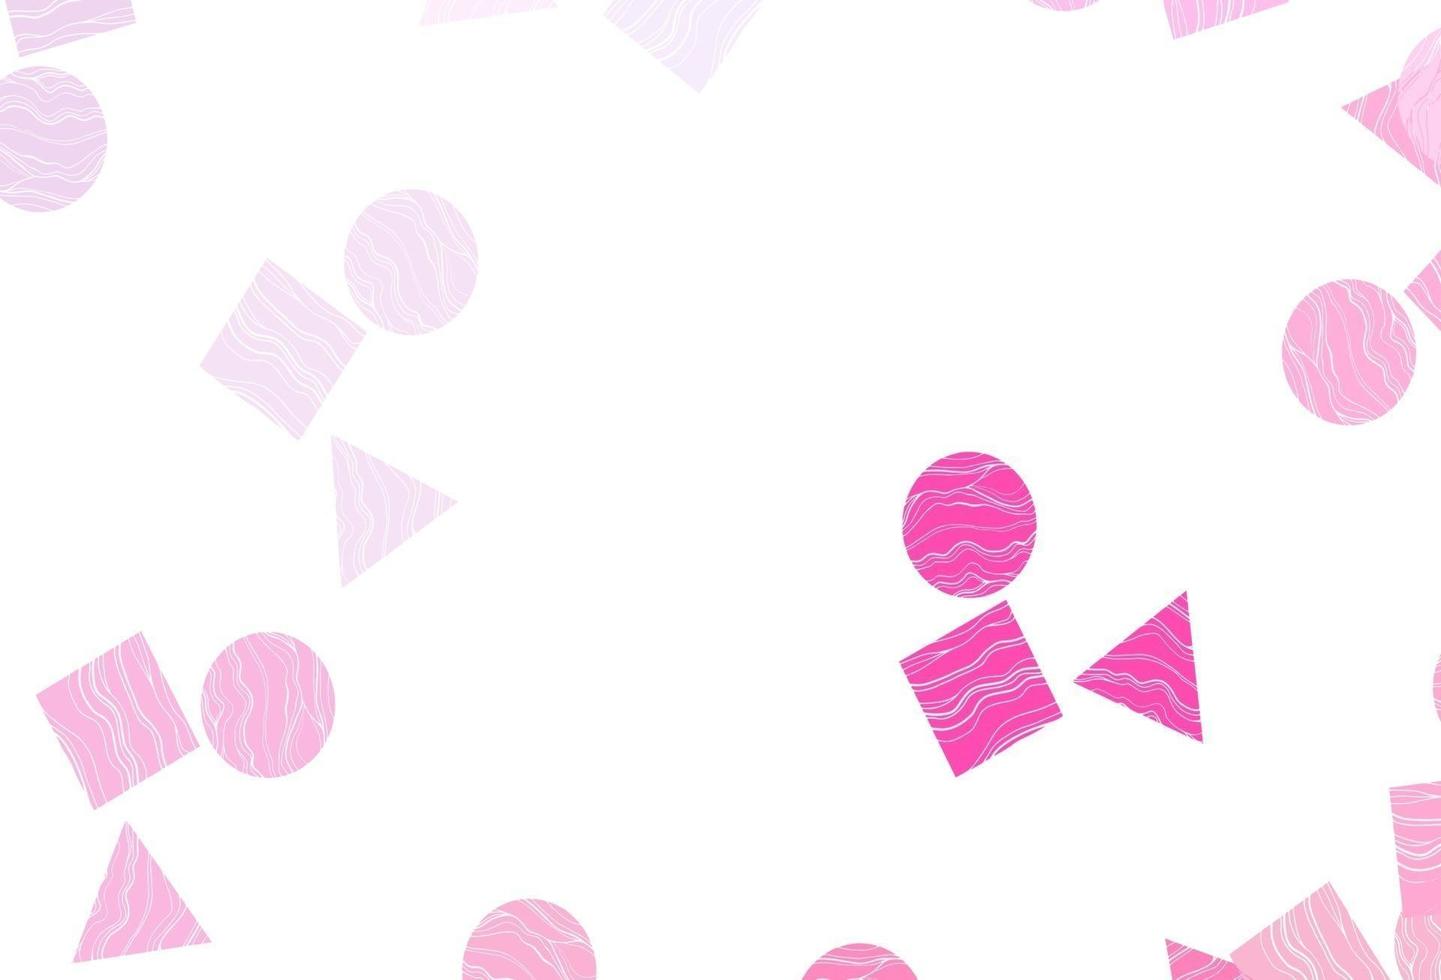 pano de fundo rosa claro, azul vector com linhas, círculos, losango.